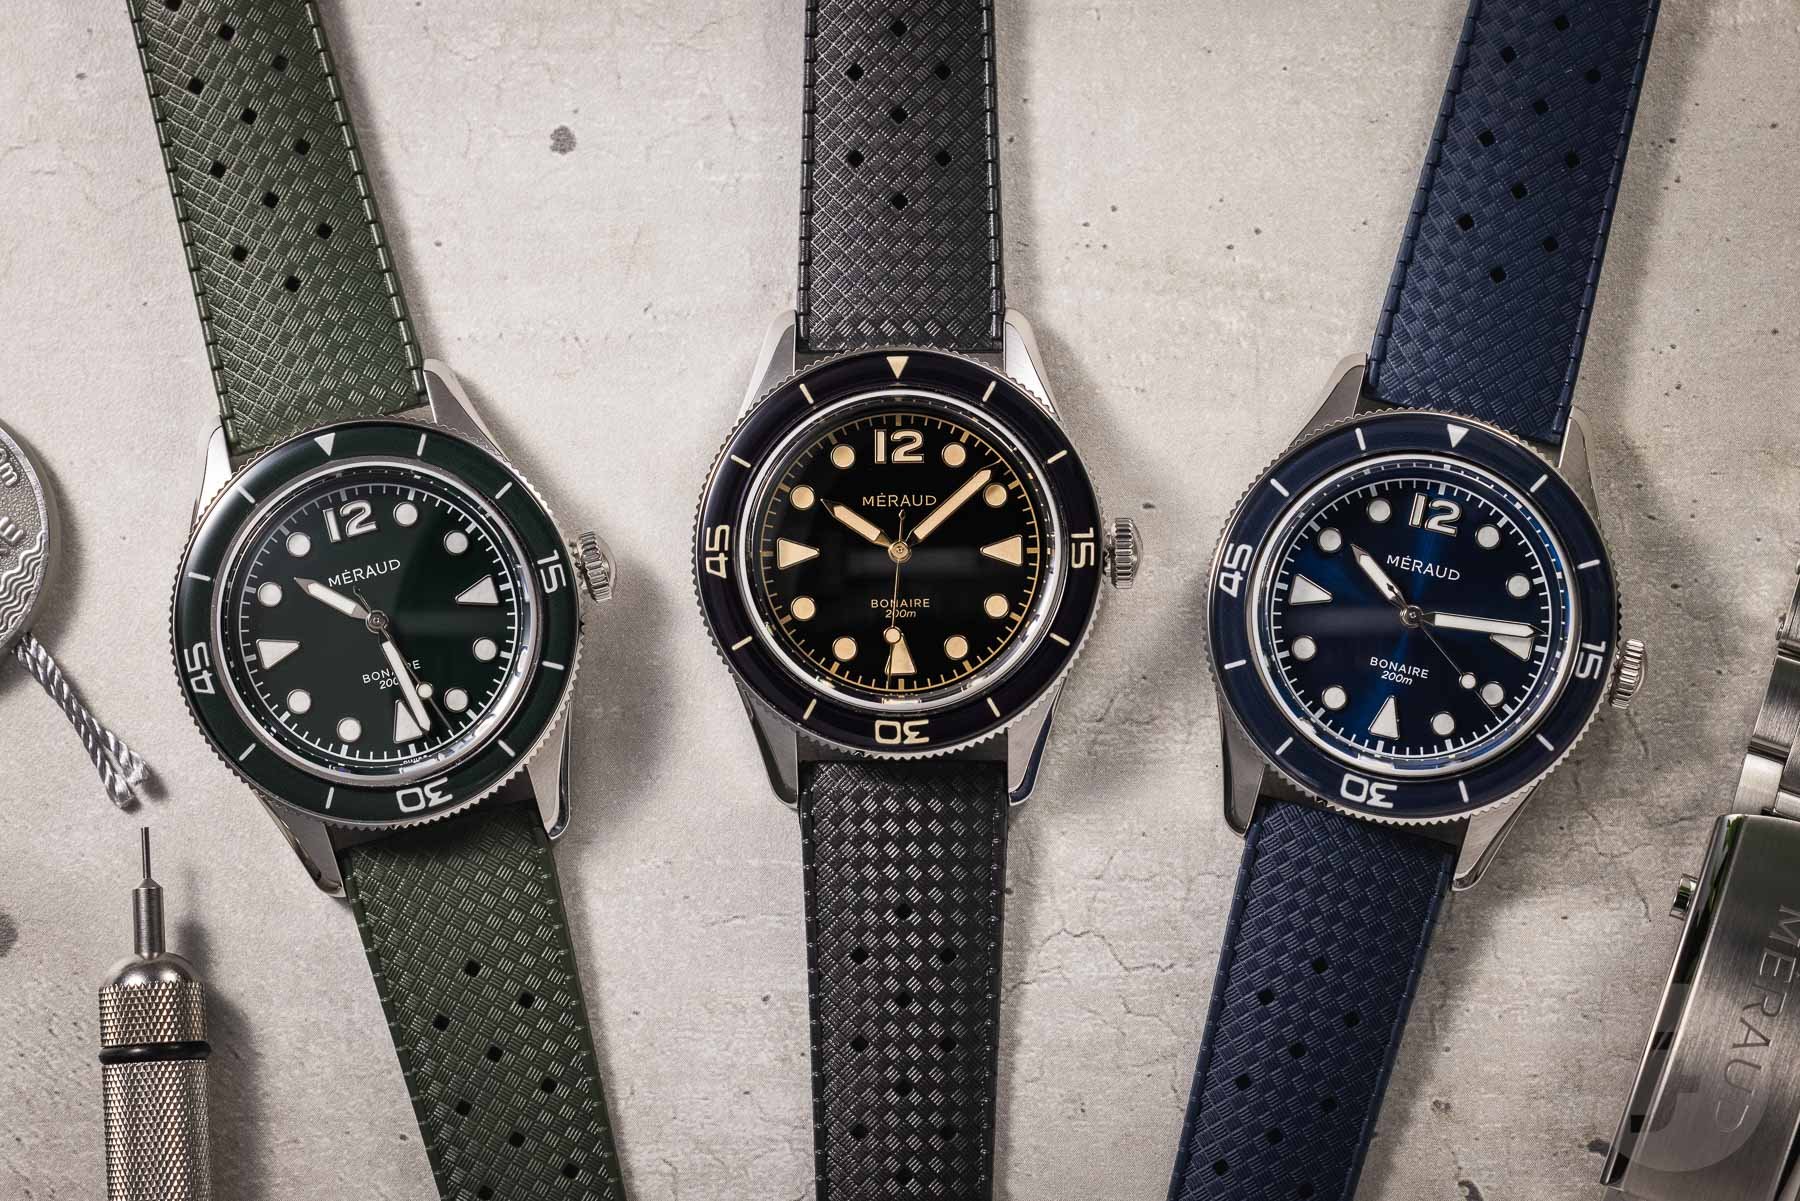 Méraud Bonaire MkII best watches under €2,500